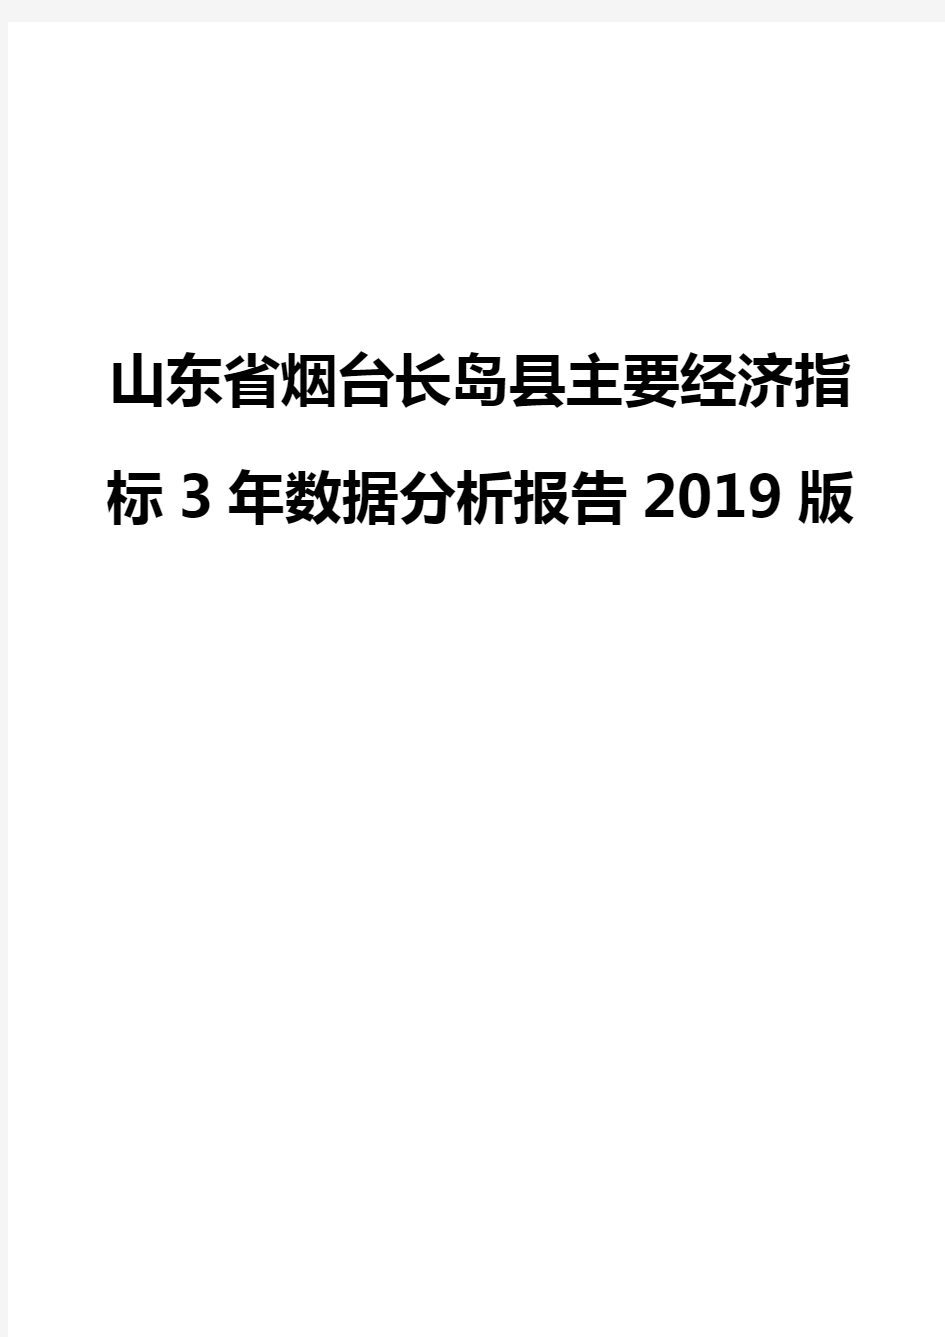 山东省烟台长岛县主要经济指标3年数据分析报告2019版